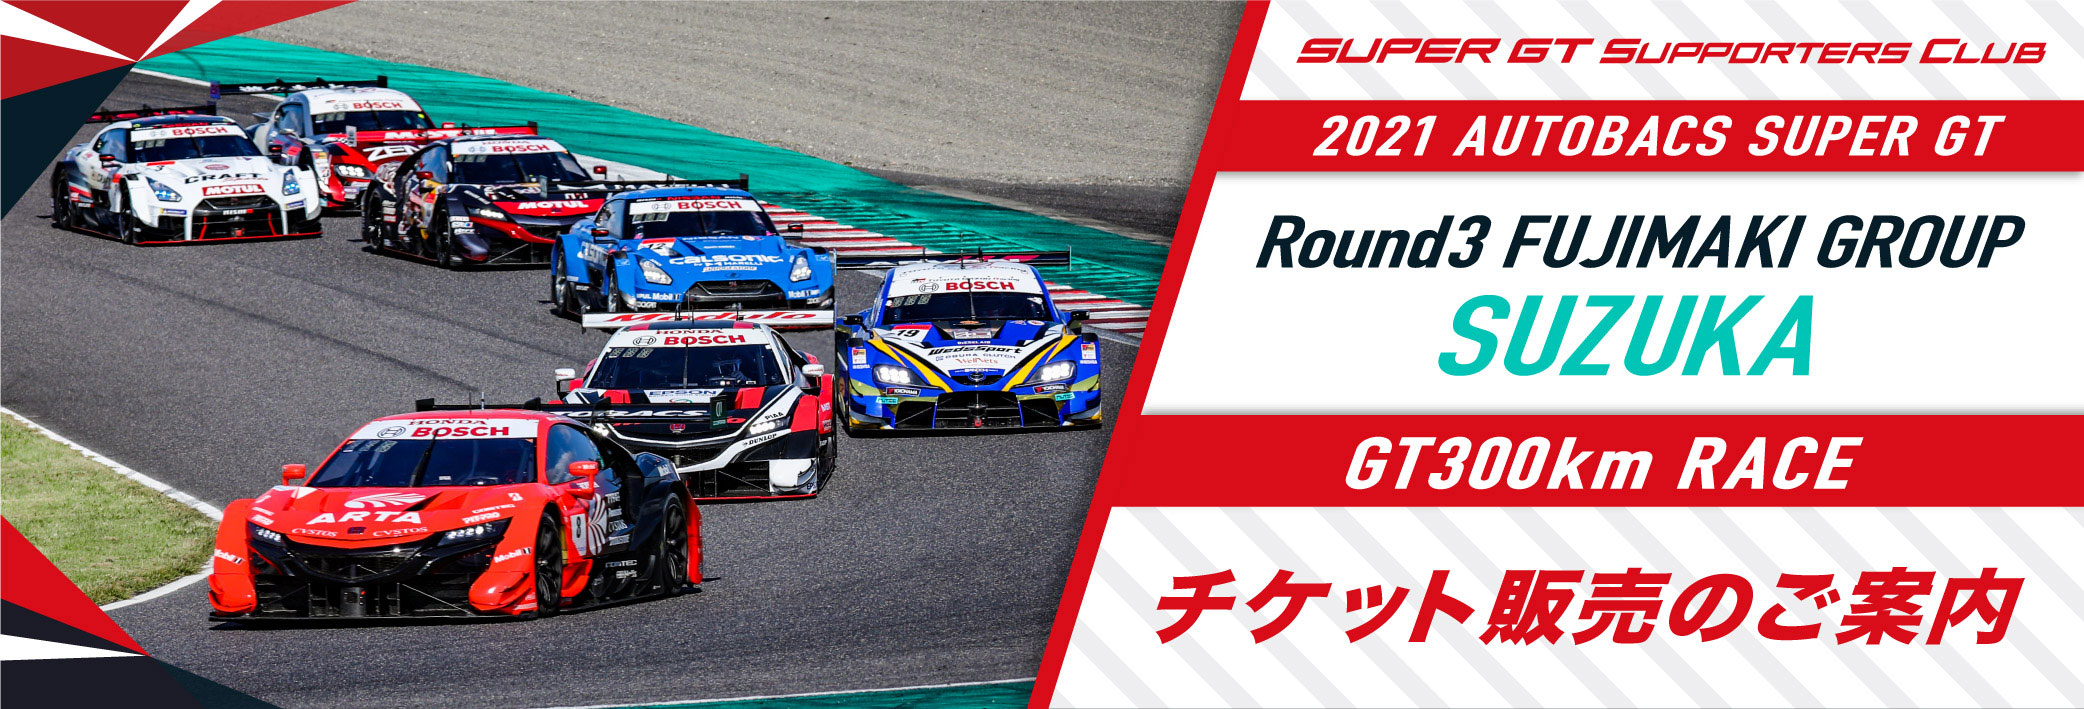 2021 AUTOBACS SUPER GT Round3 SUZUKA GT 300km RACE チケット販売のご案内